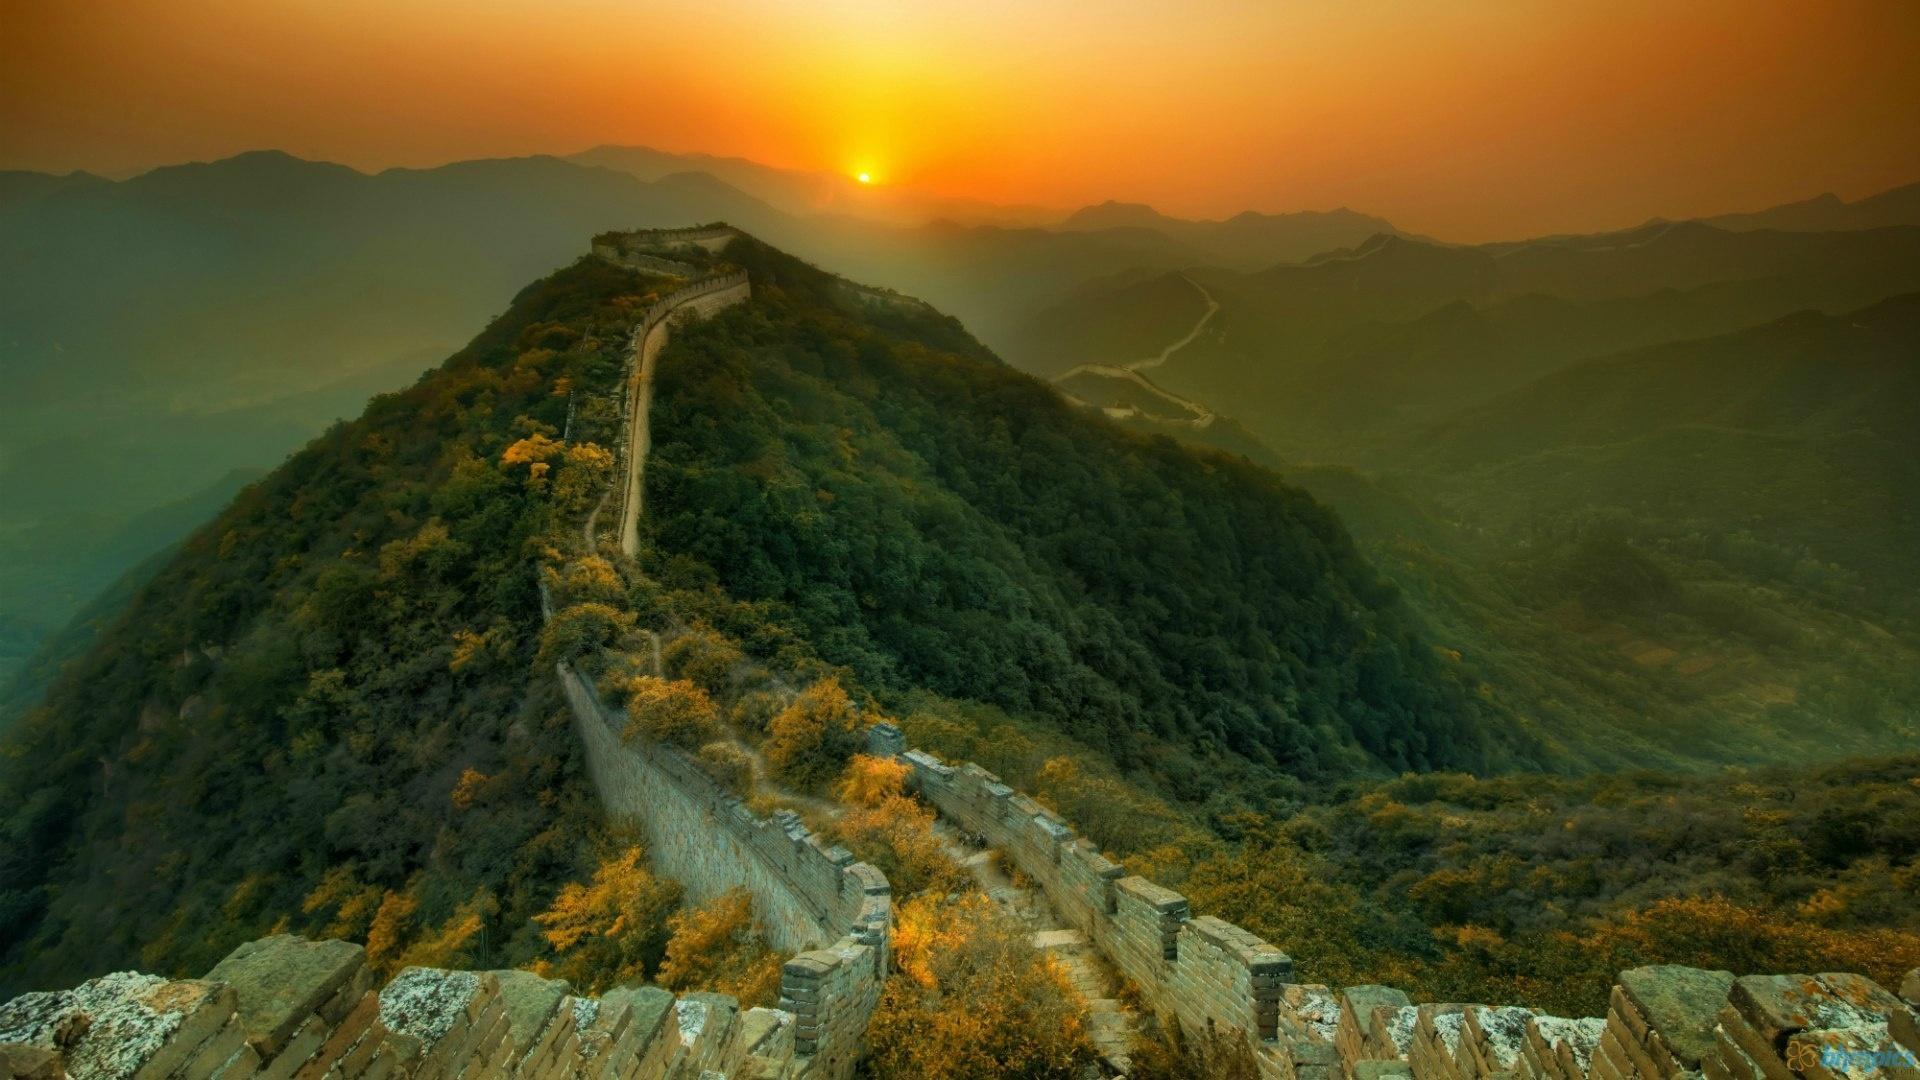 Sleeping at the Great Wall